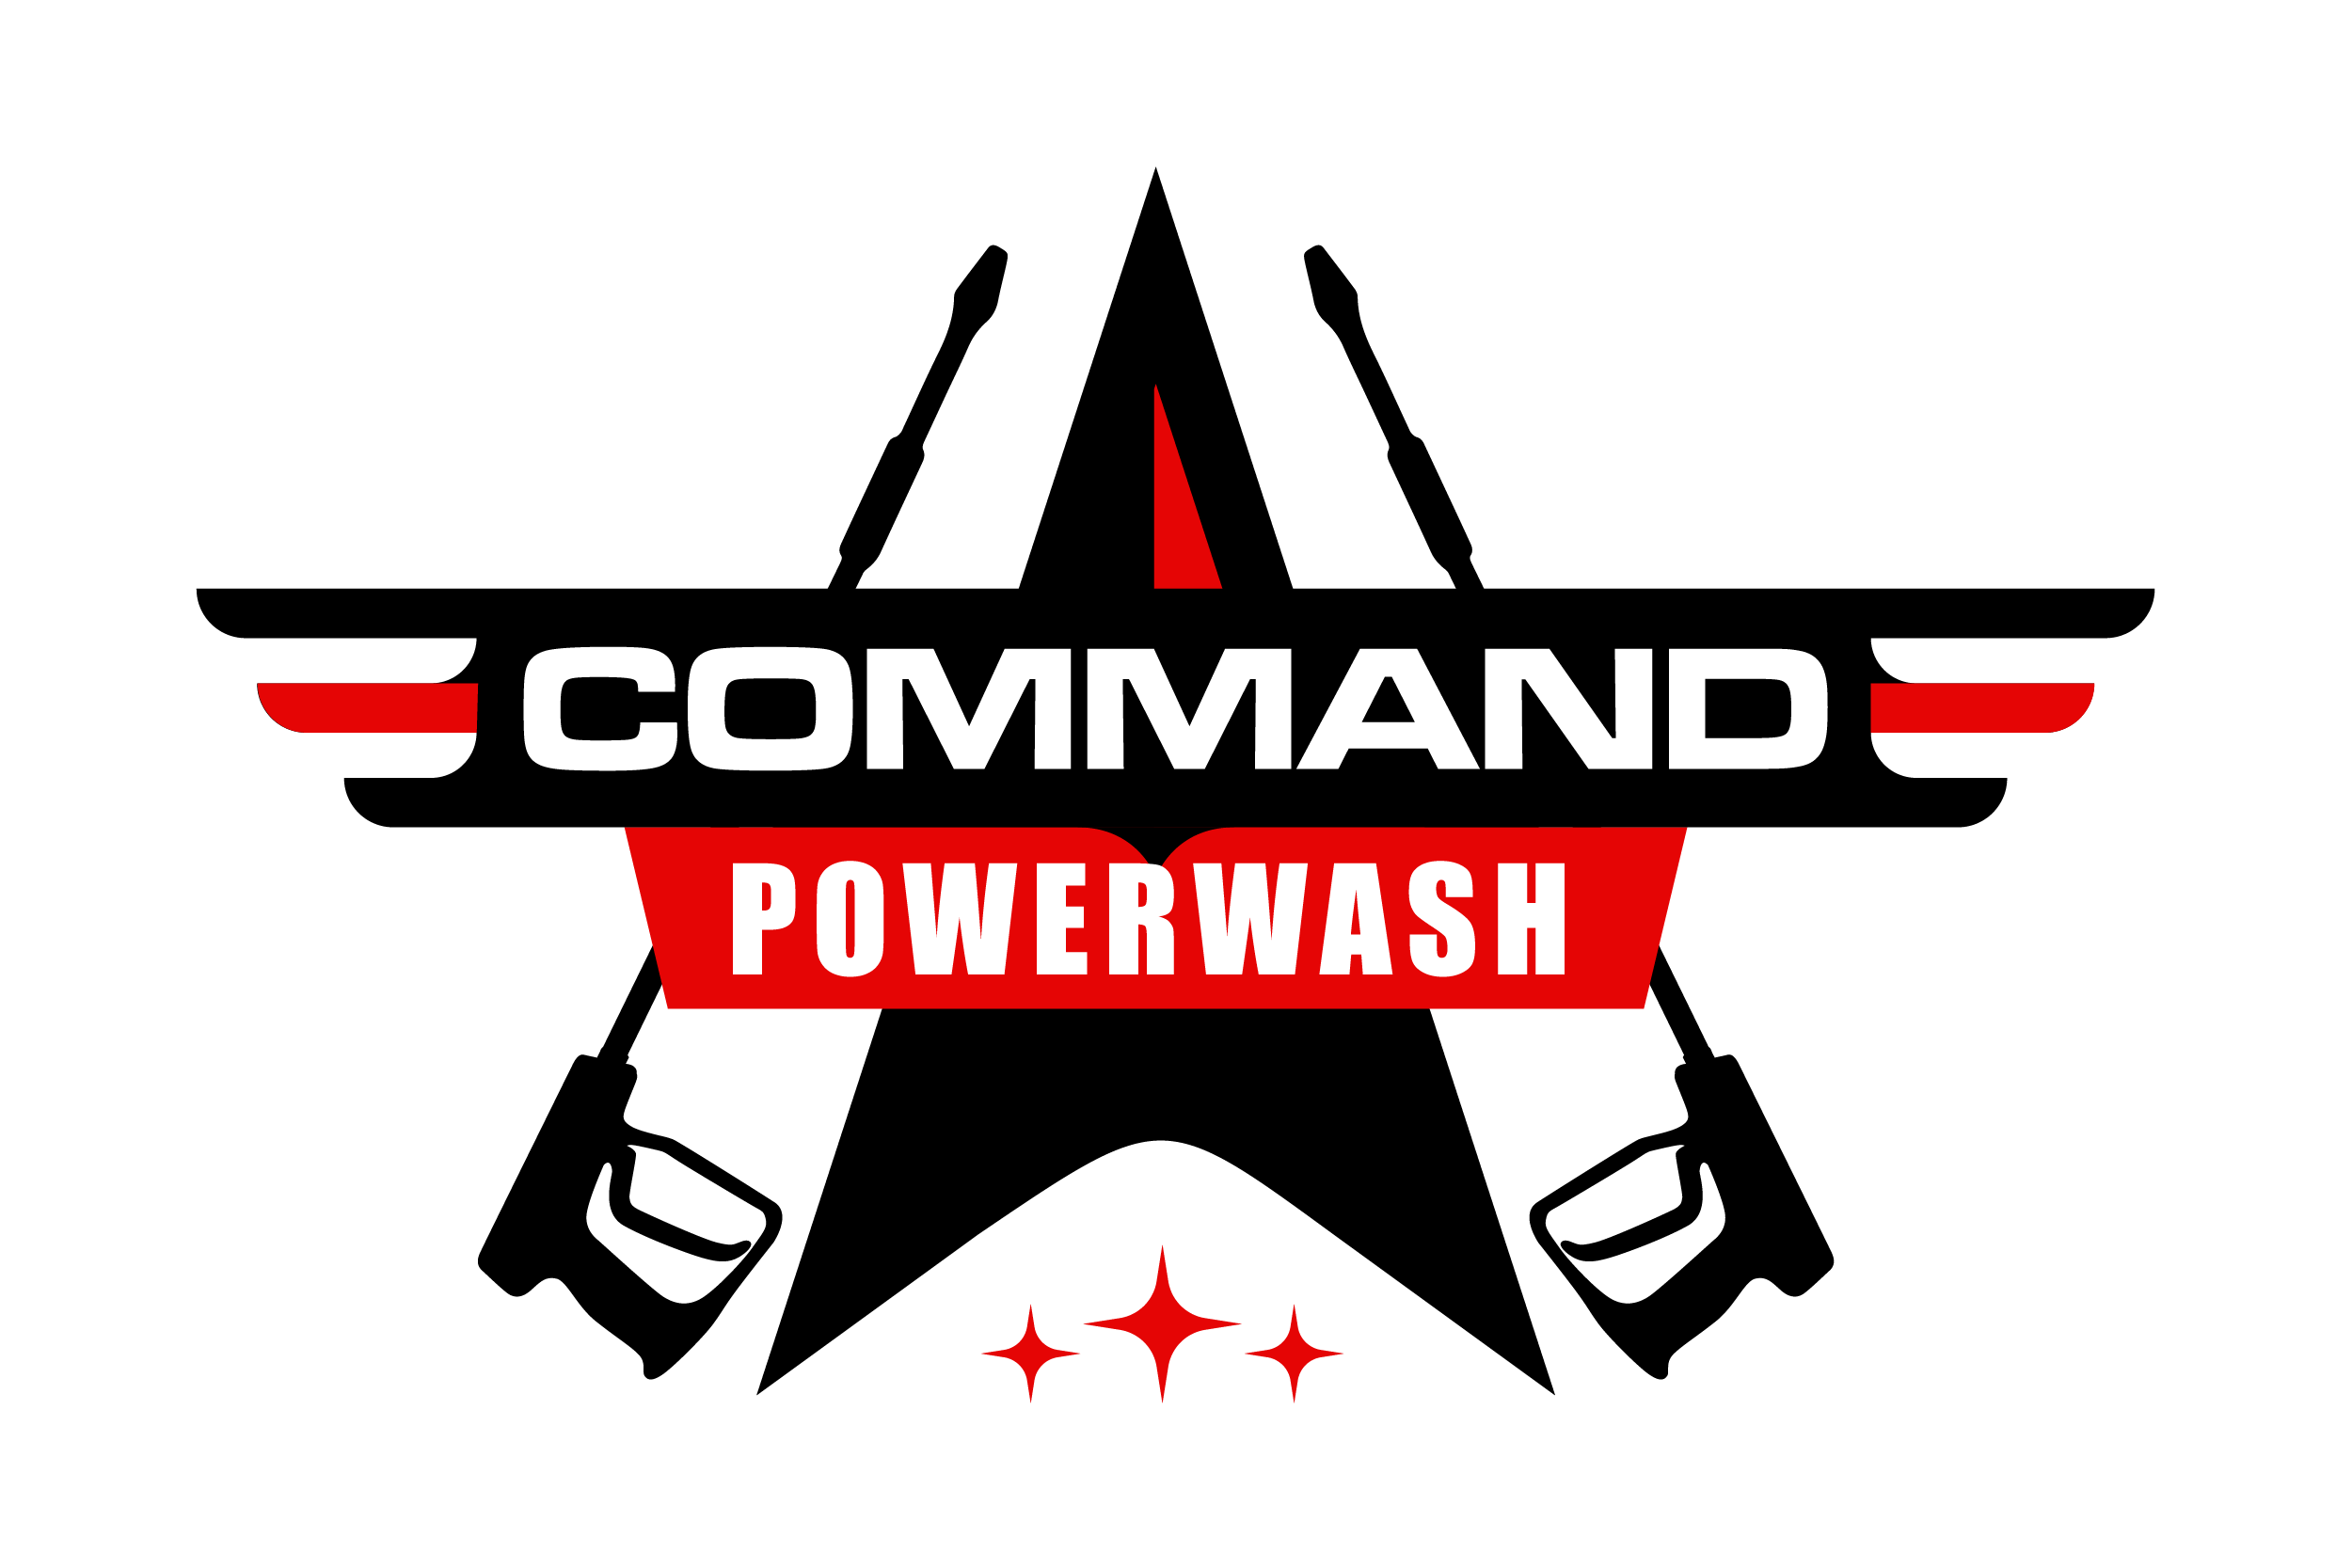 Command Powerwash Supply